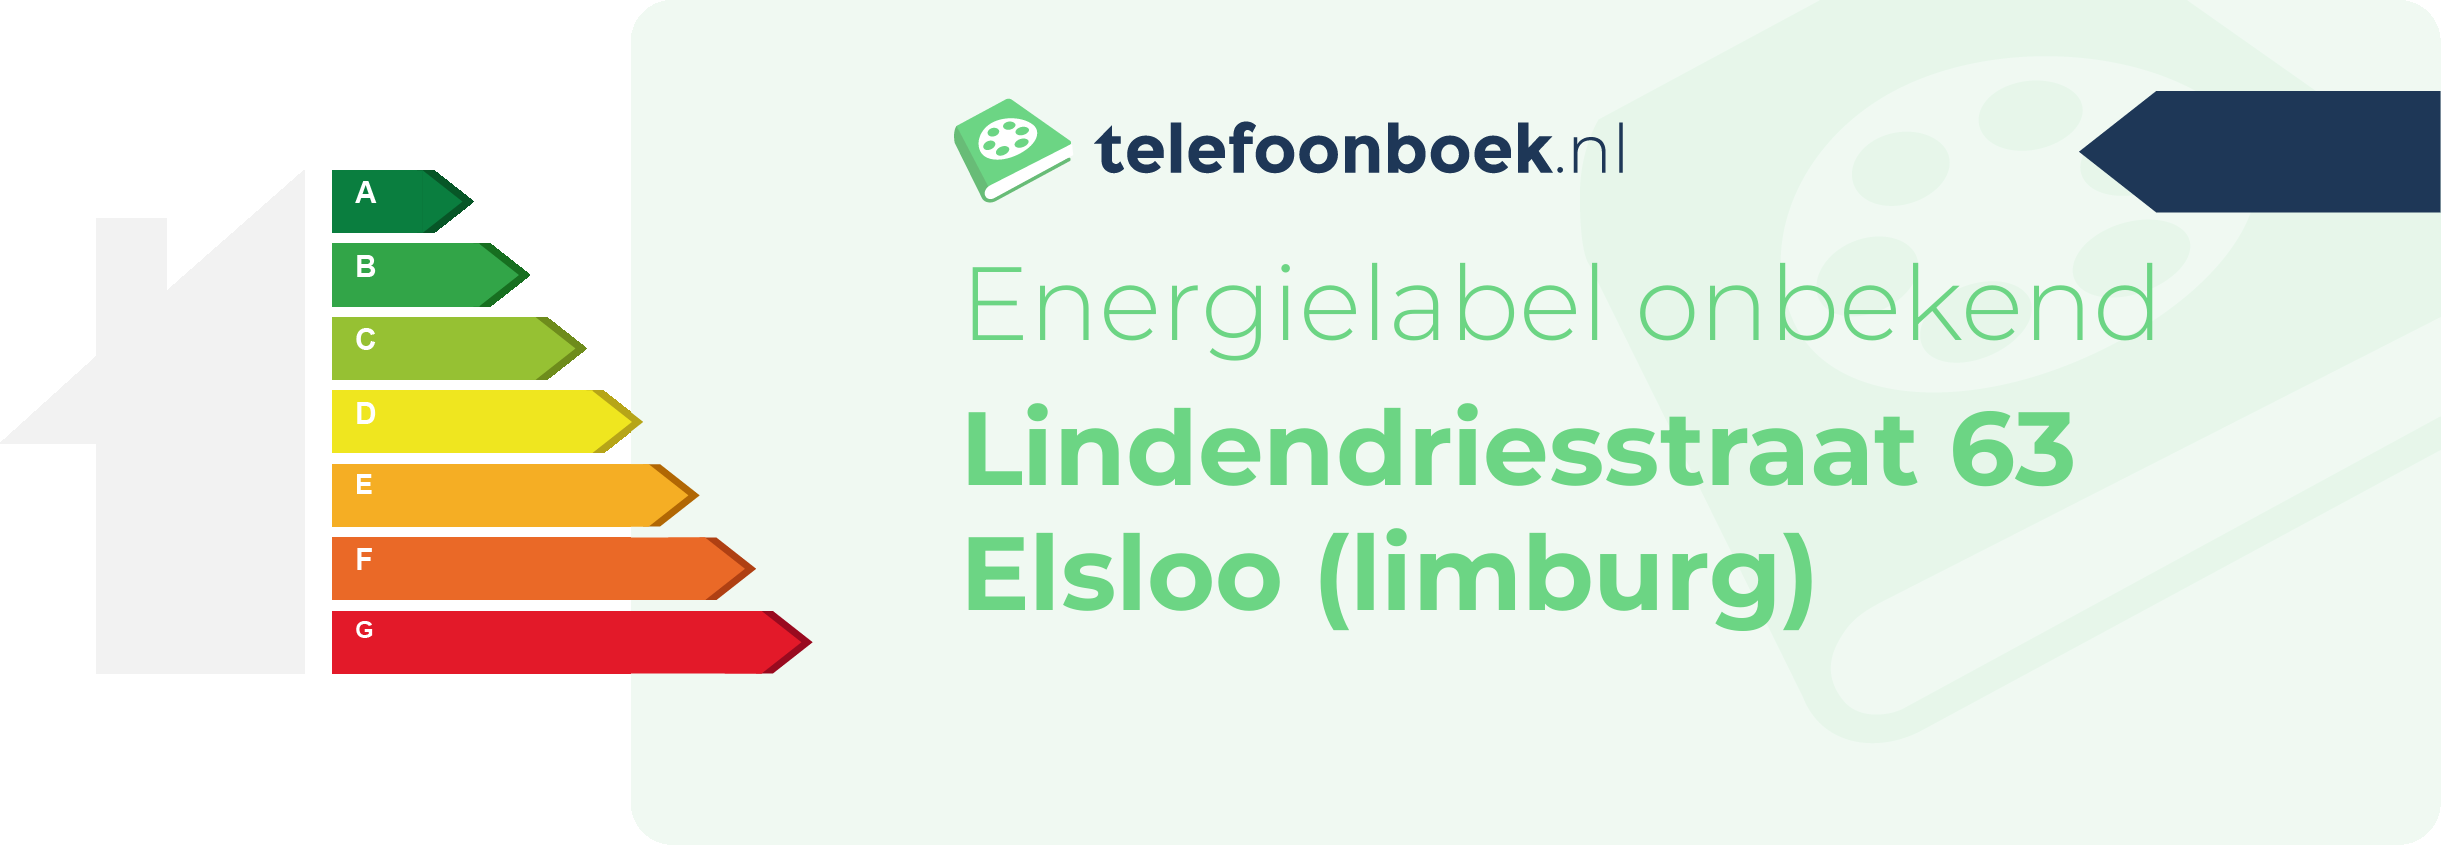 Energielabel Lindendriesstraat 63 Elsloo (Limburg)